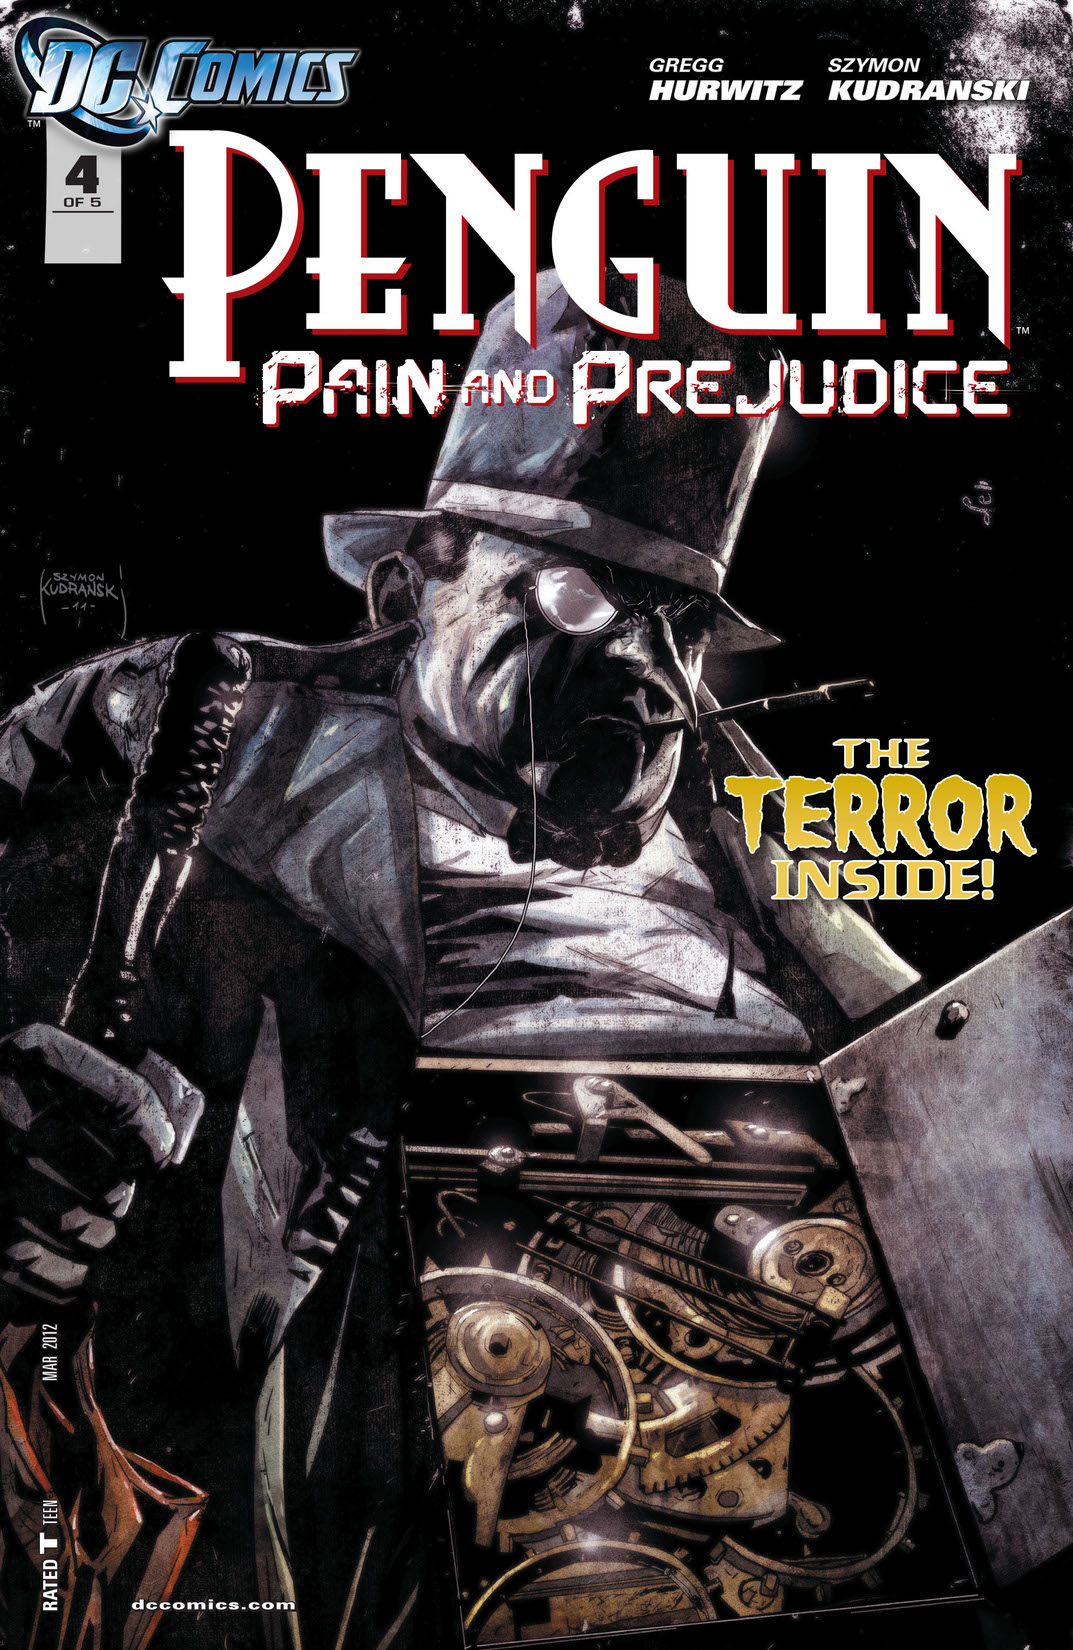 Penguin: Pain & Prejudice #4 preview images